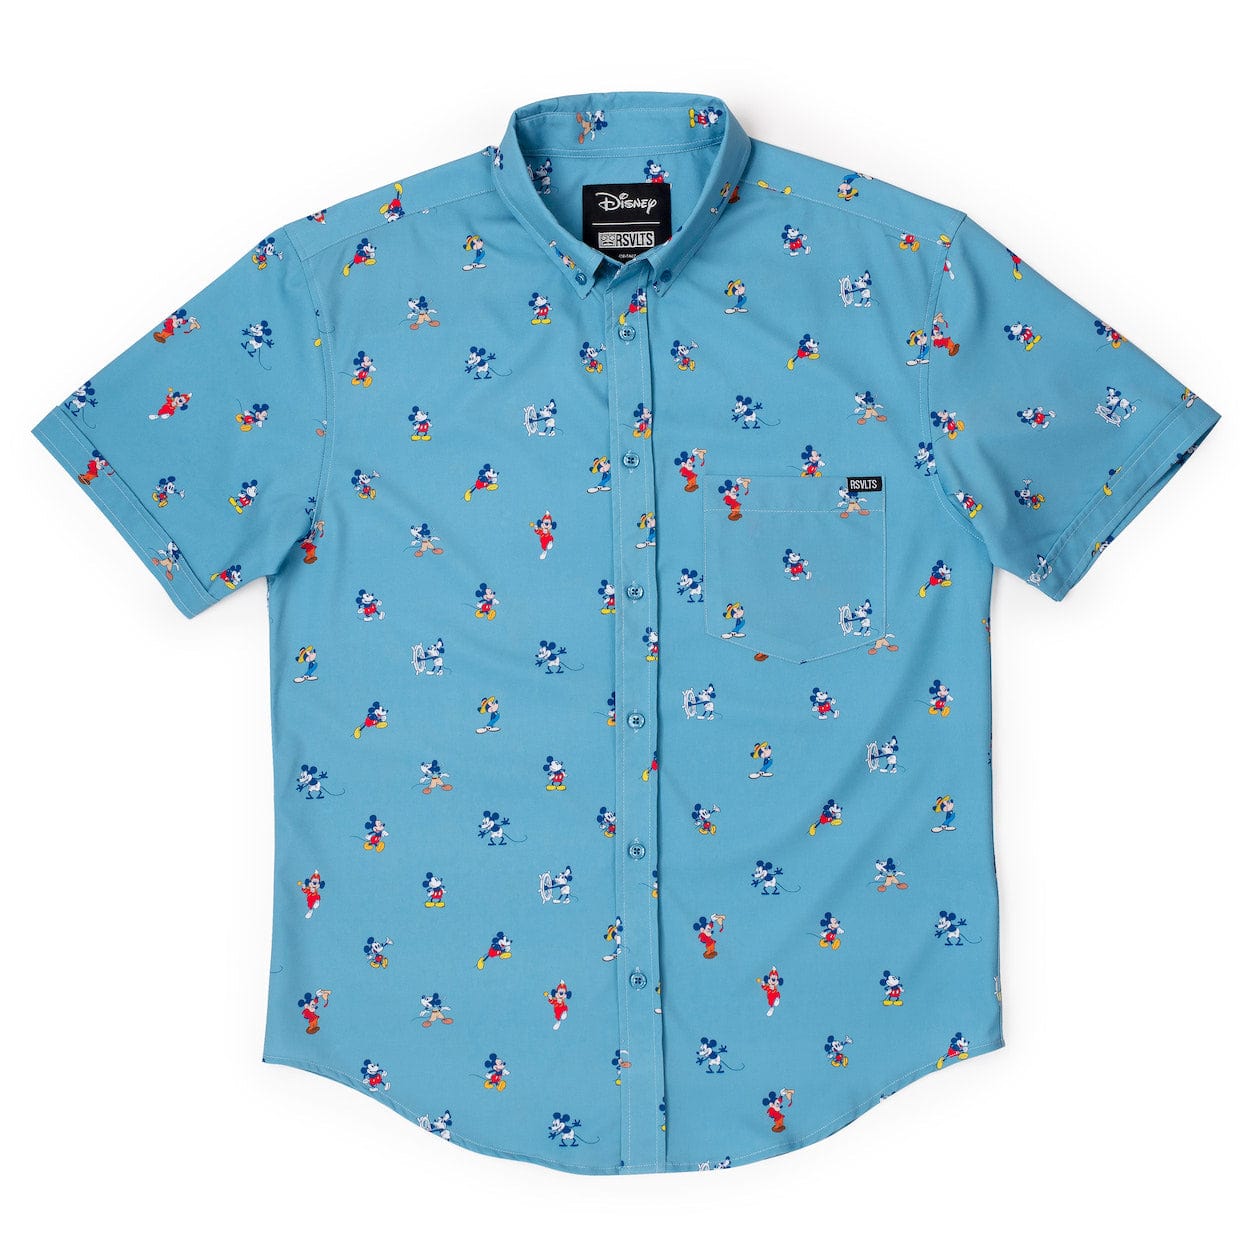 RSVLTS Disney 100 lil Mickeys Short Sleeve Shirt